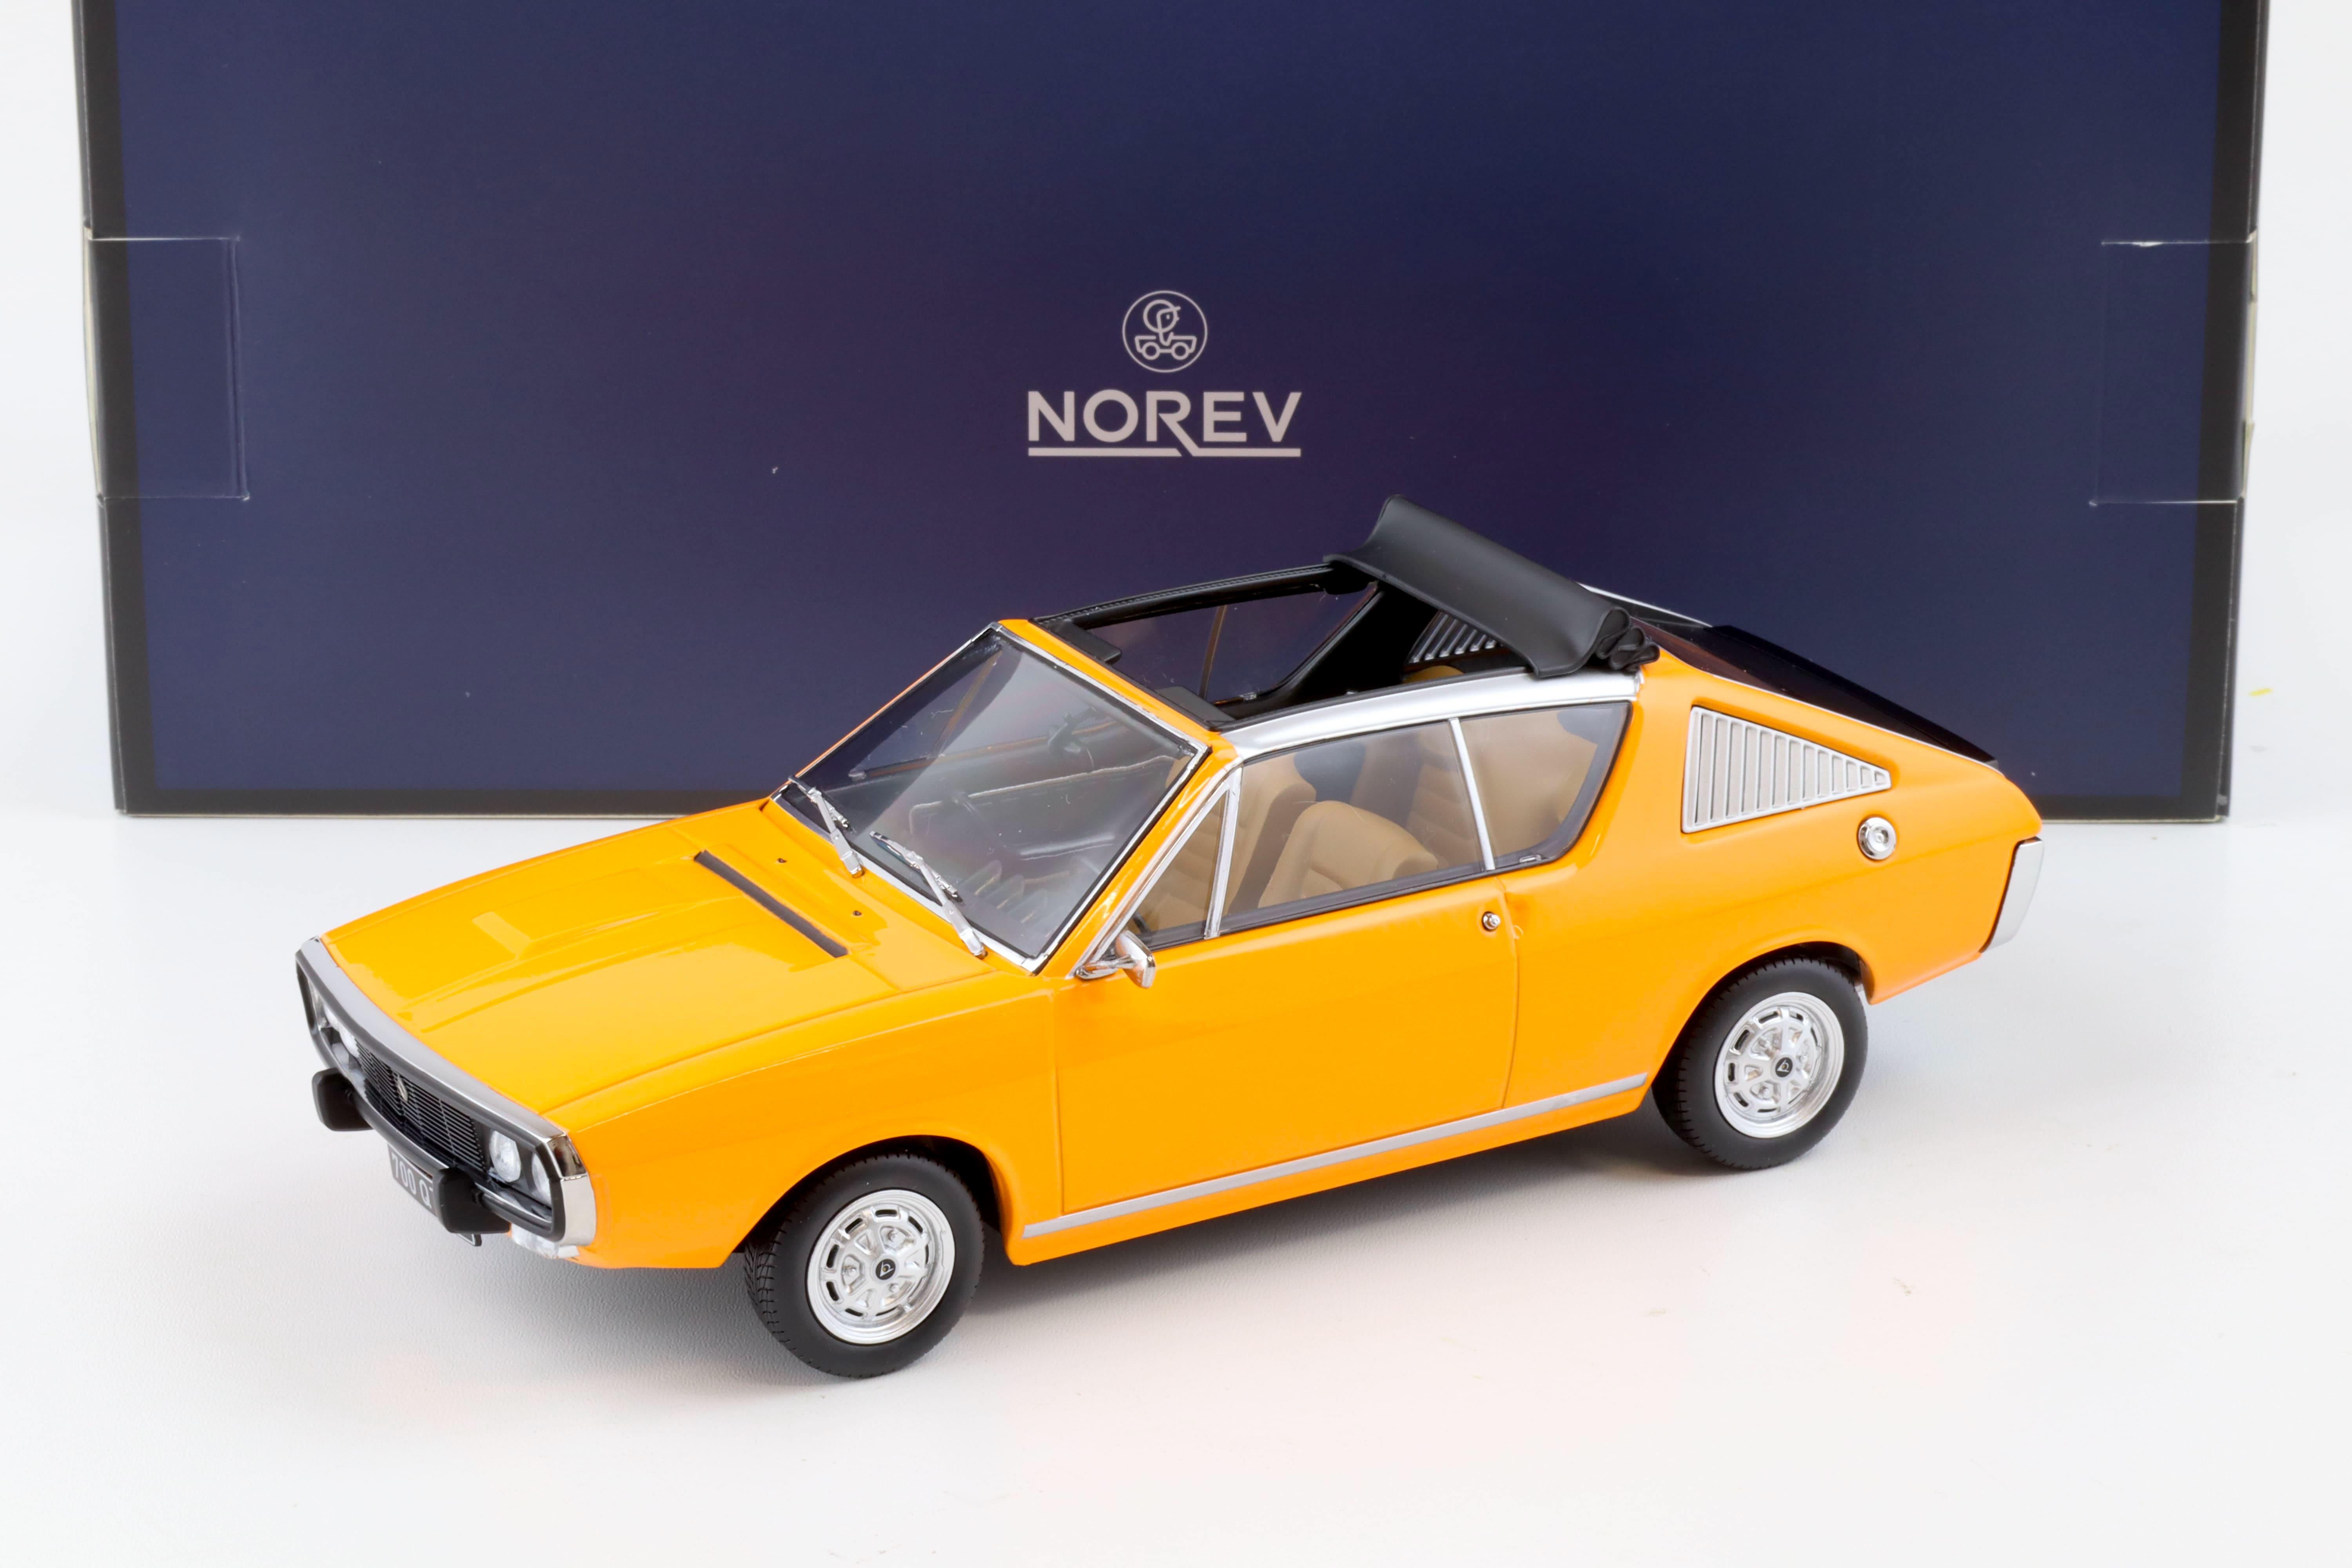 1:18 Norev Renault 17 TS Decrouvrable 1974 orange - Limited 300 pcs.